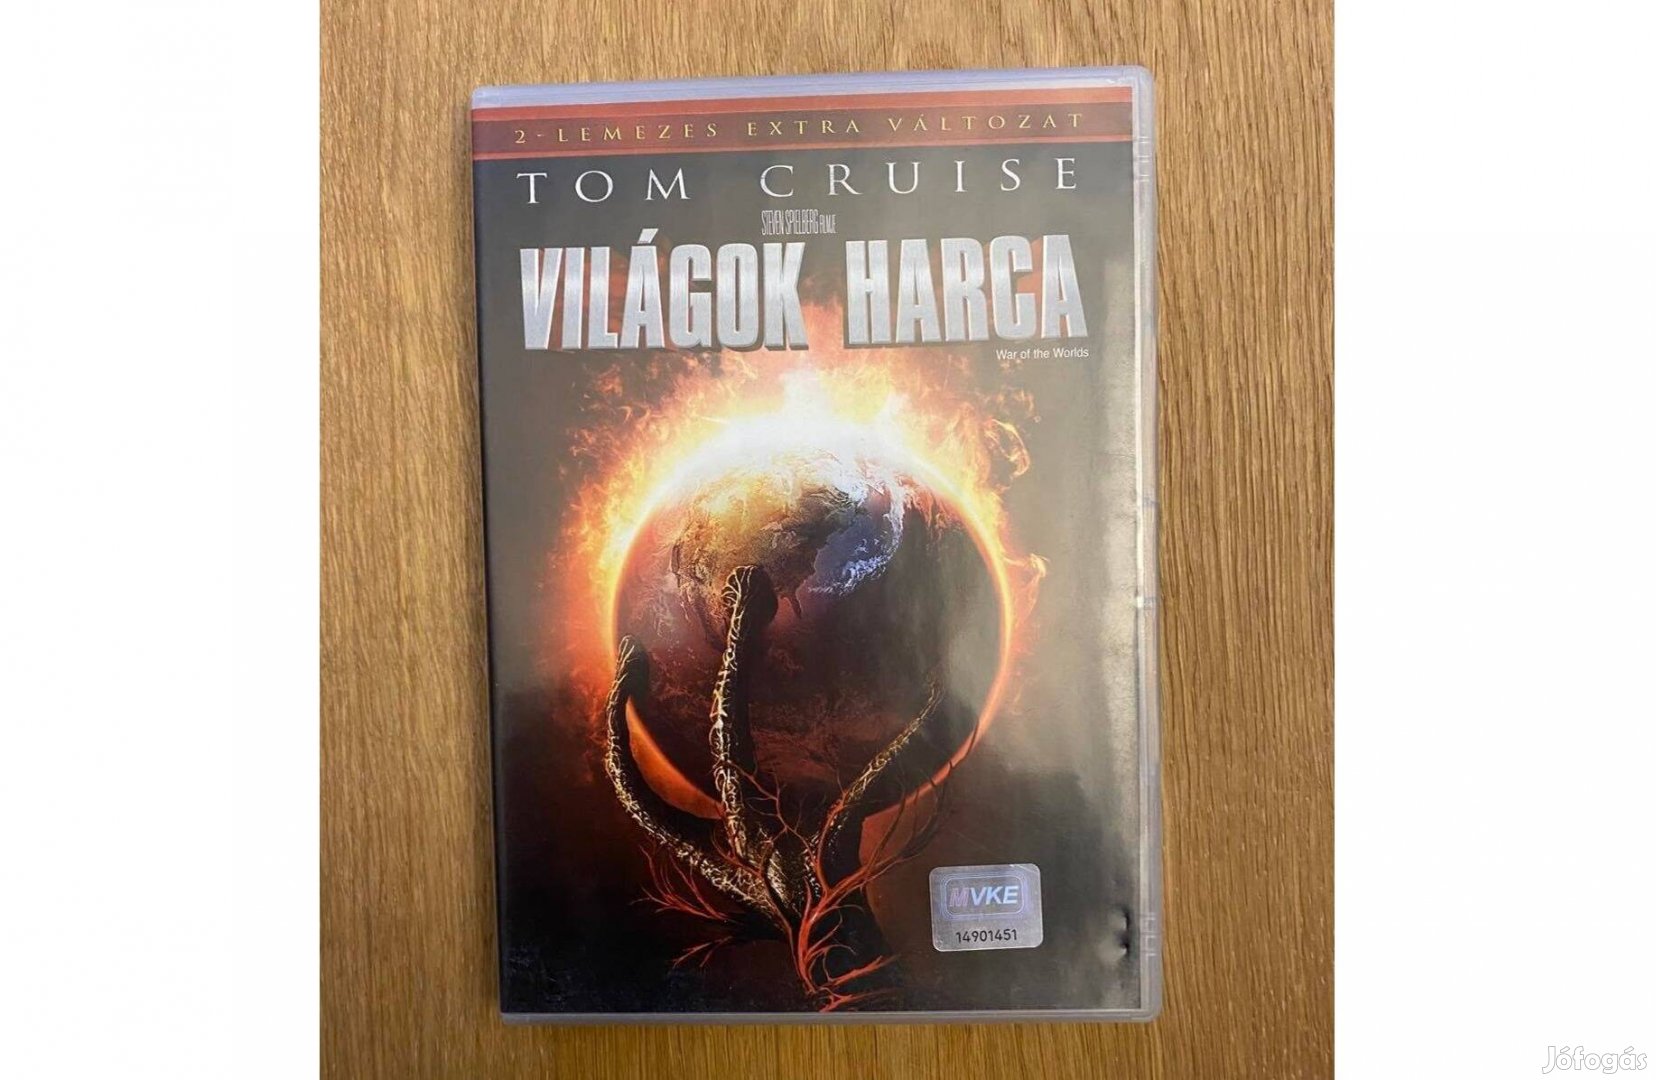 Világok harca DVD (Tom Cruise) - extra változat, magyarul